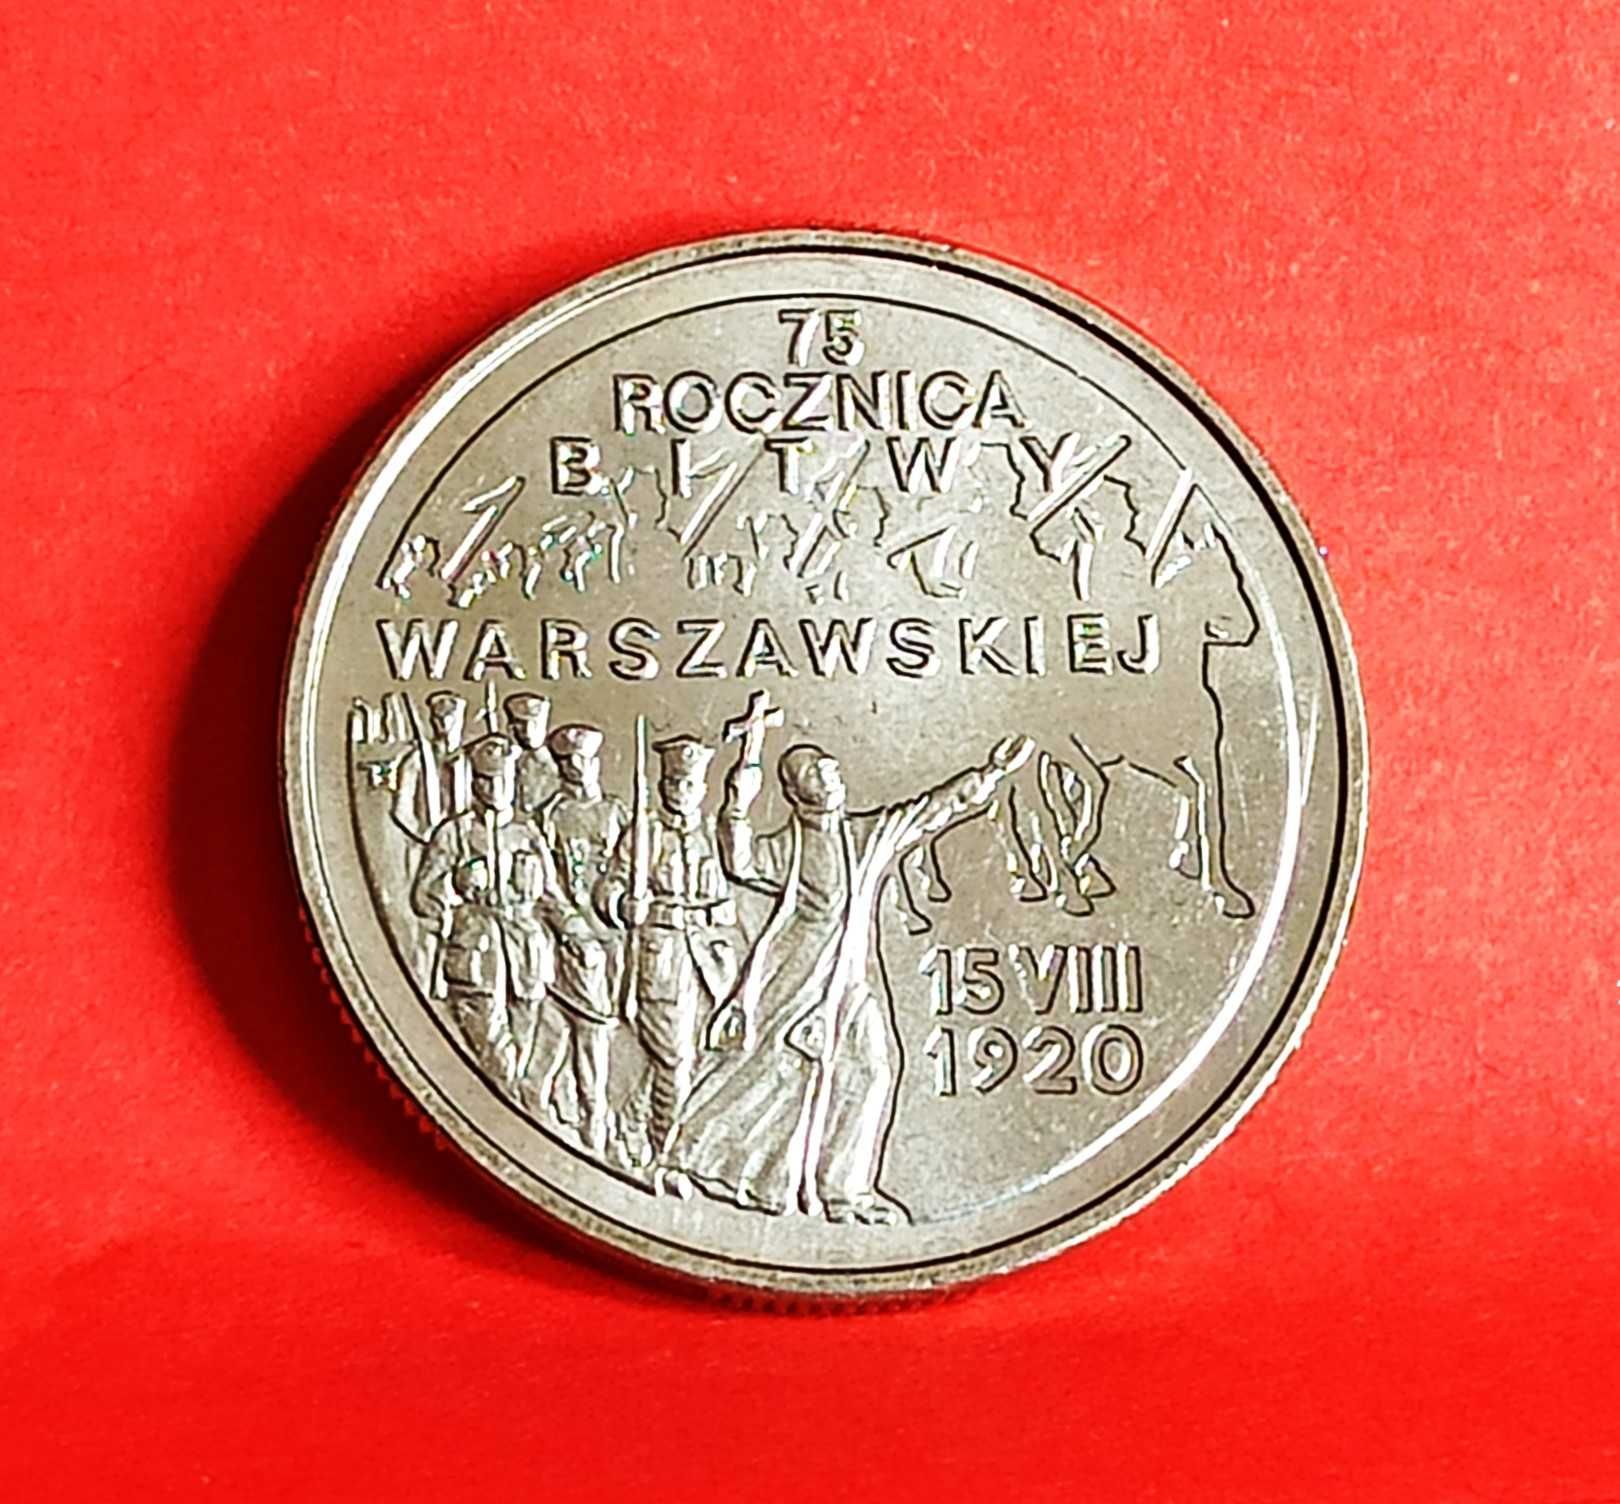 2 zł 1995 r. 75 Rocznica Bitwy Warszawskiej